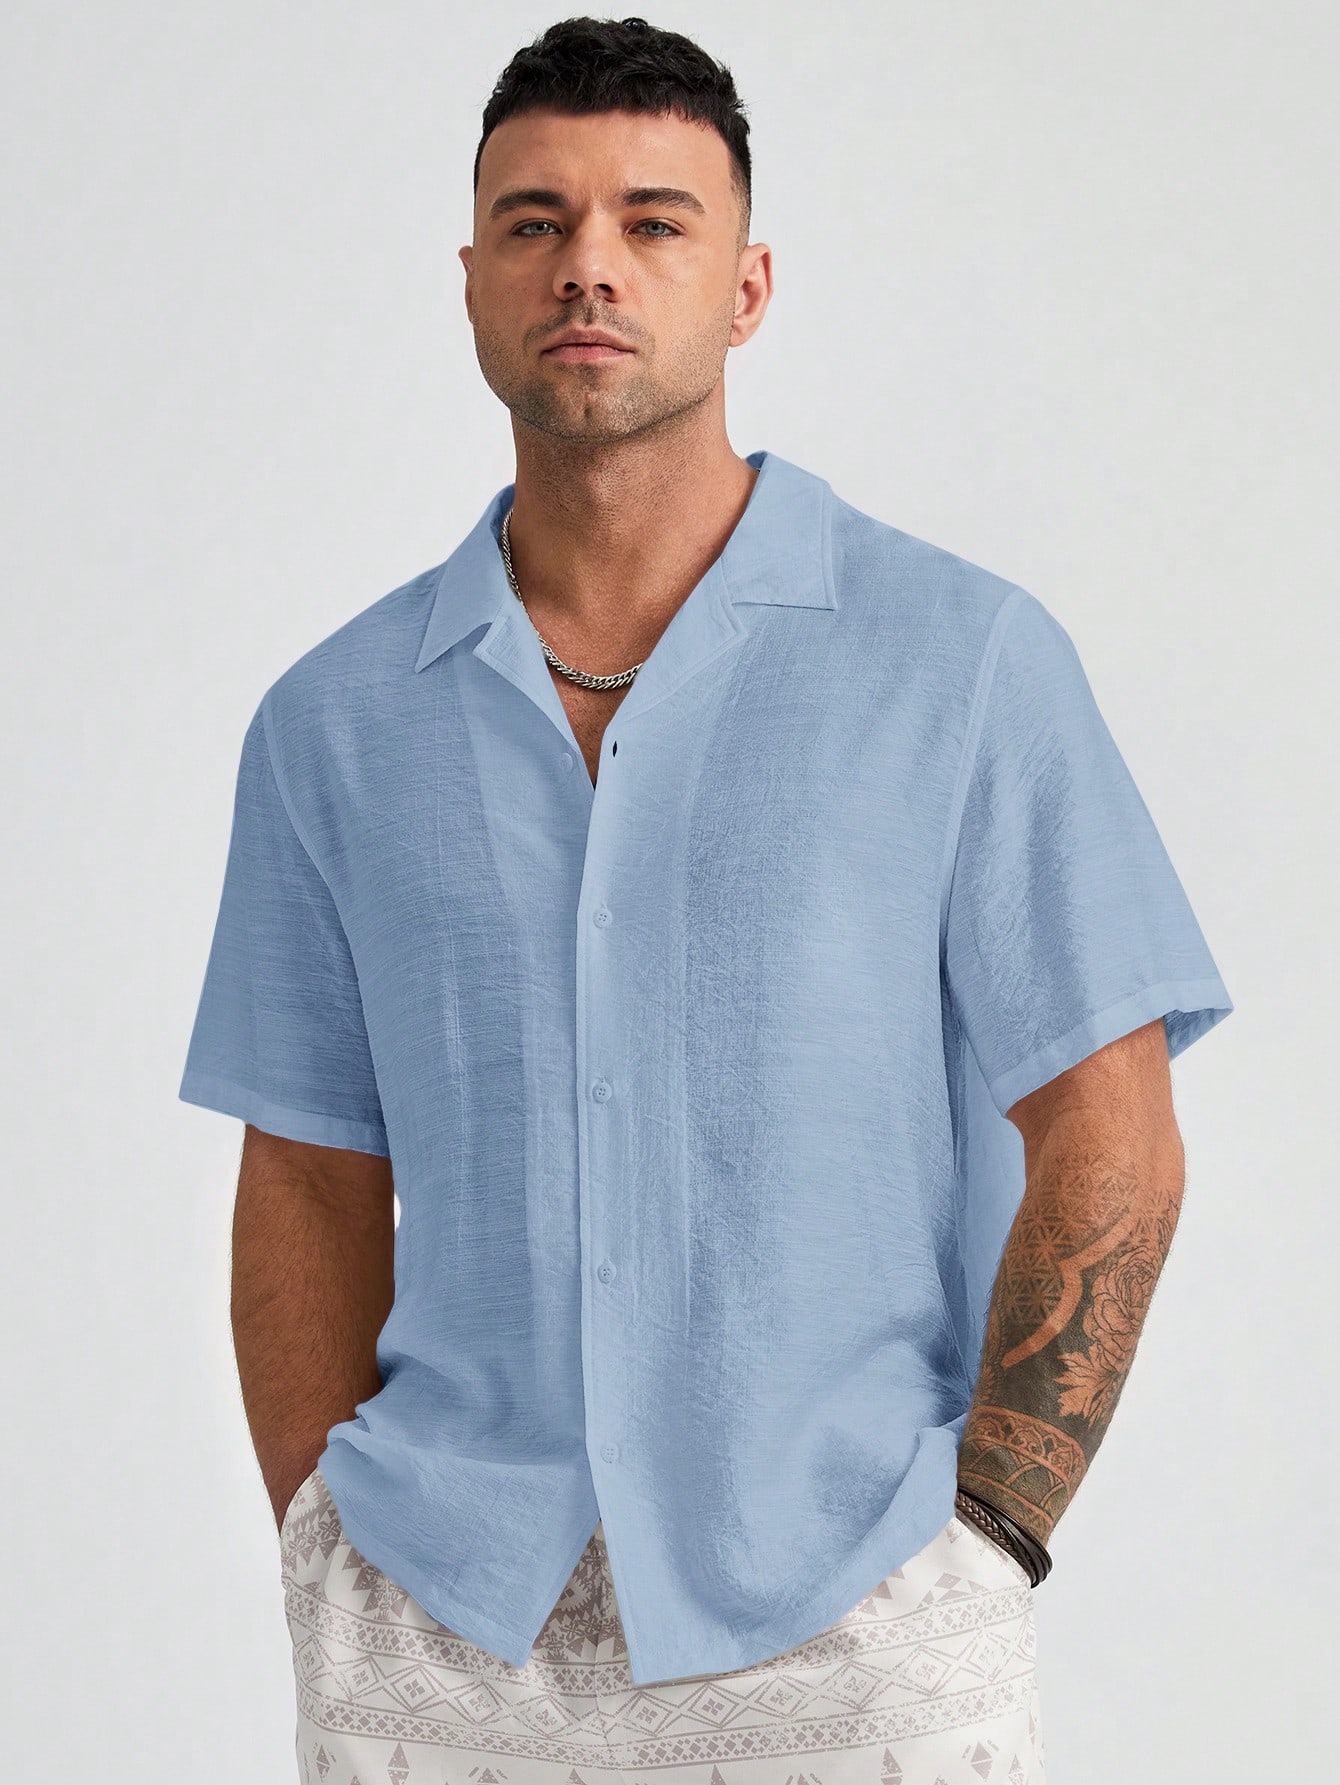 цена Manfinity Homme Мужская однотонная тканая рубашка больших размеров с коротким рукавом больших размеров, синий